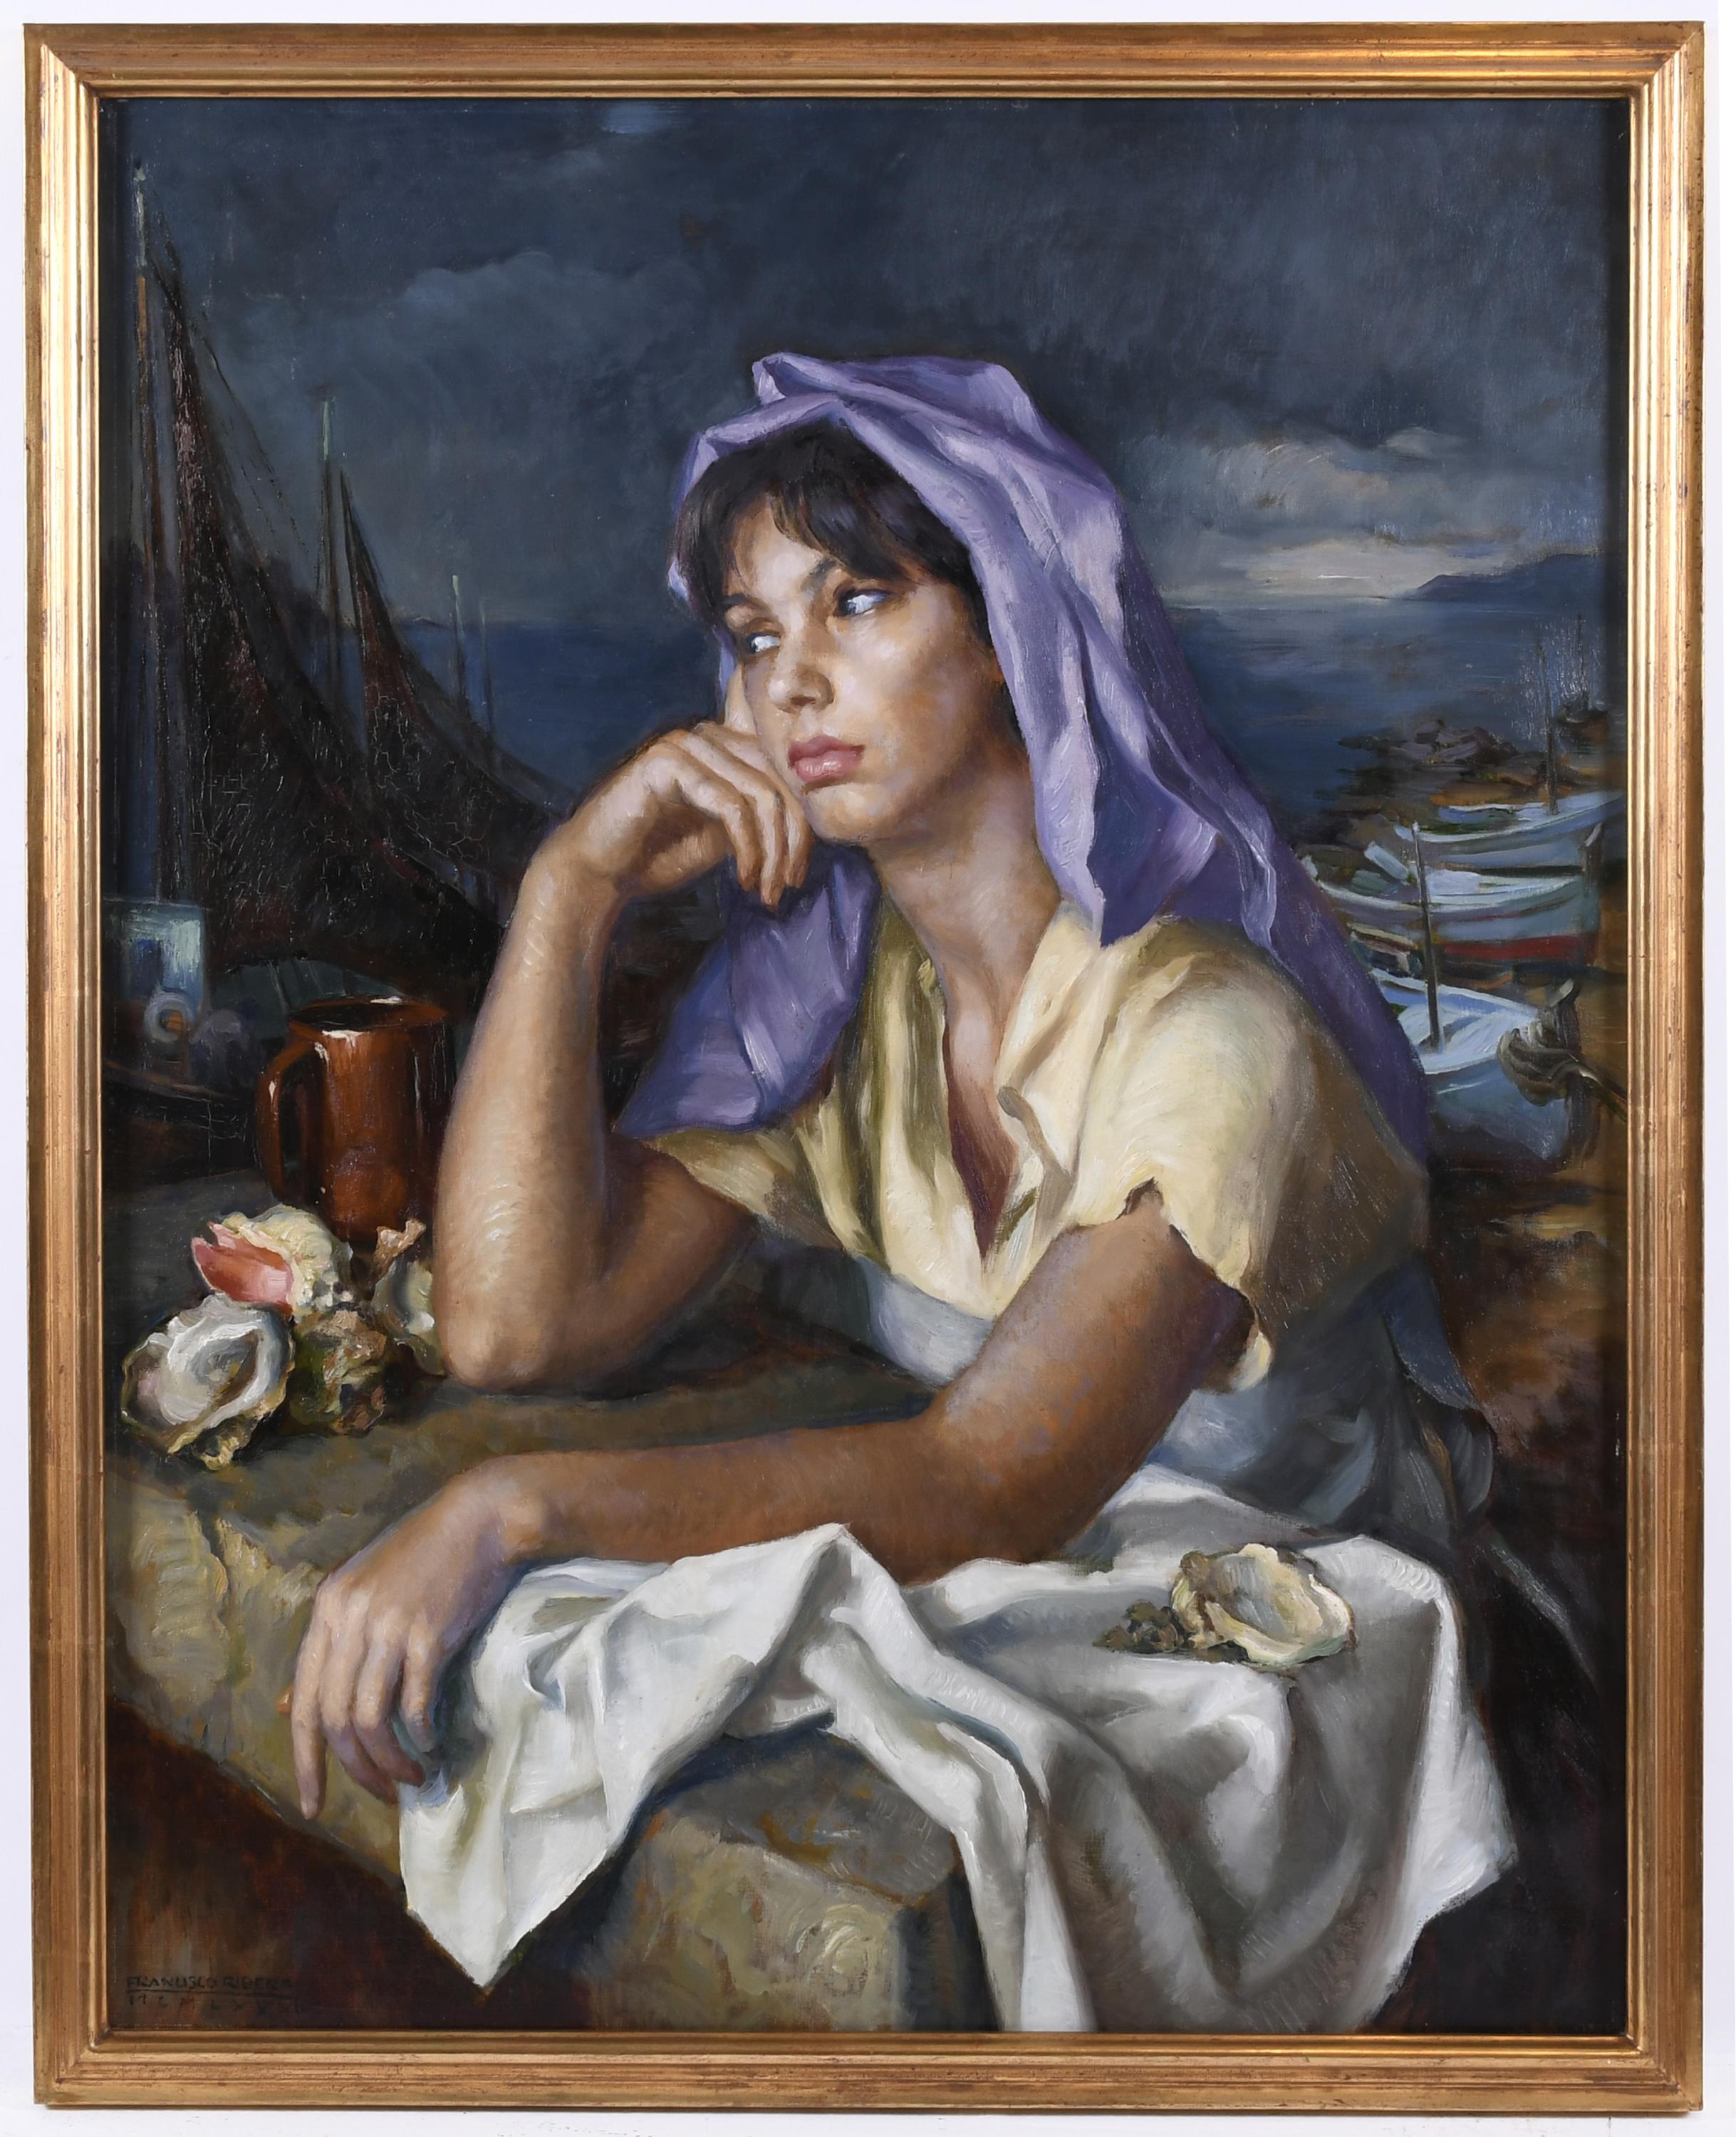 FRANCISCO RIBERA GOMEZ (1907-1990). "ANOCHECER COSTERO", 19